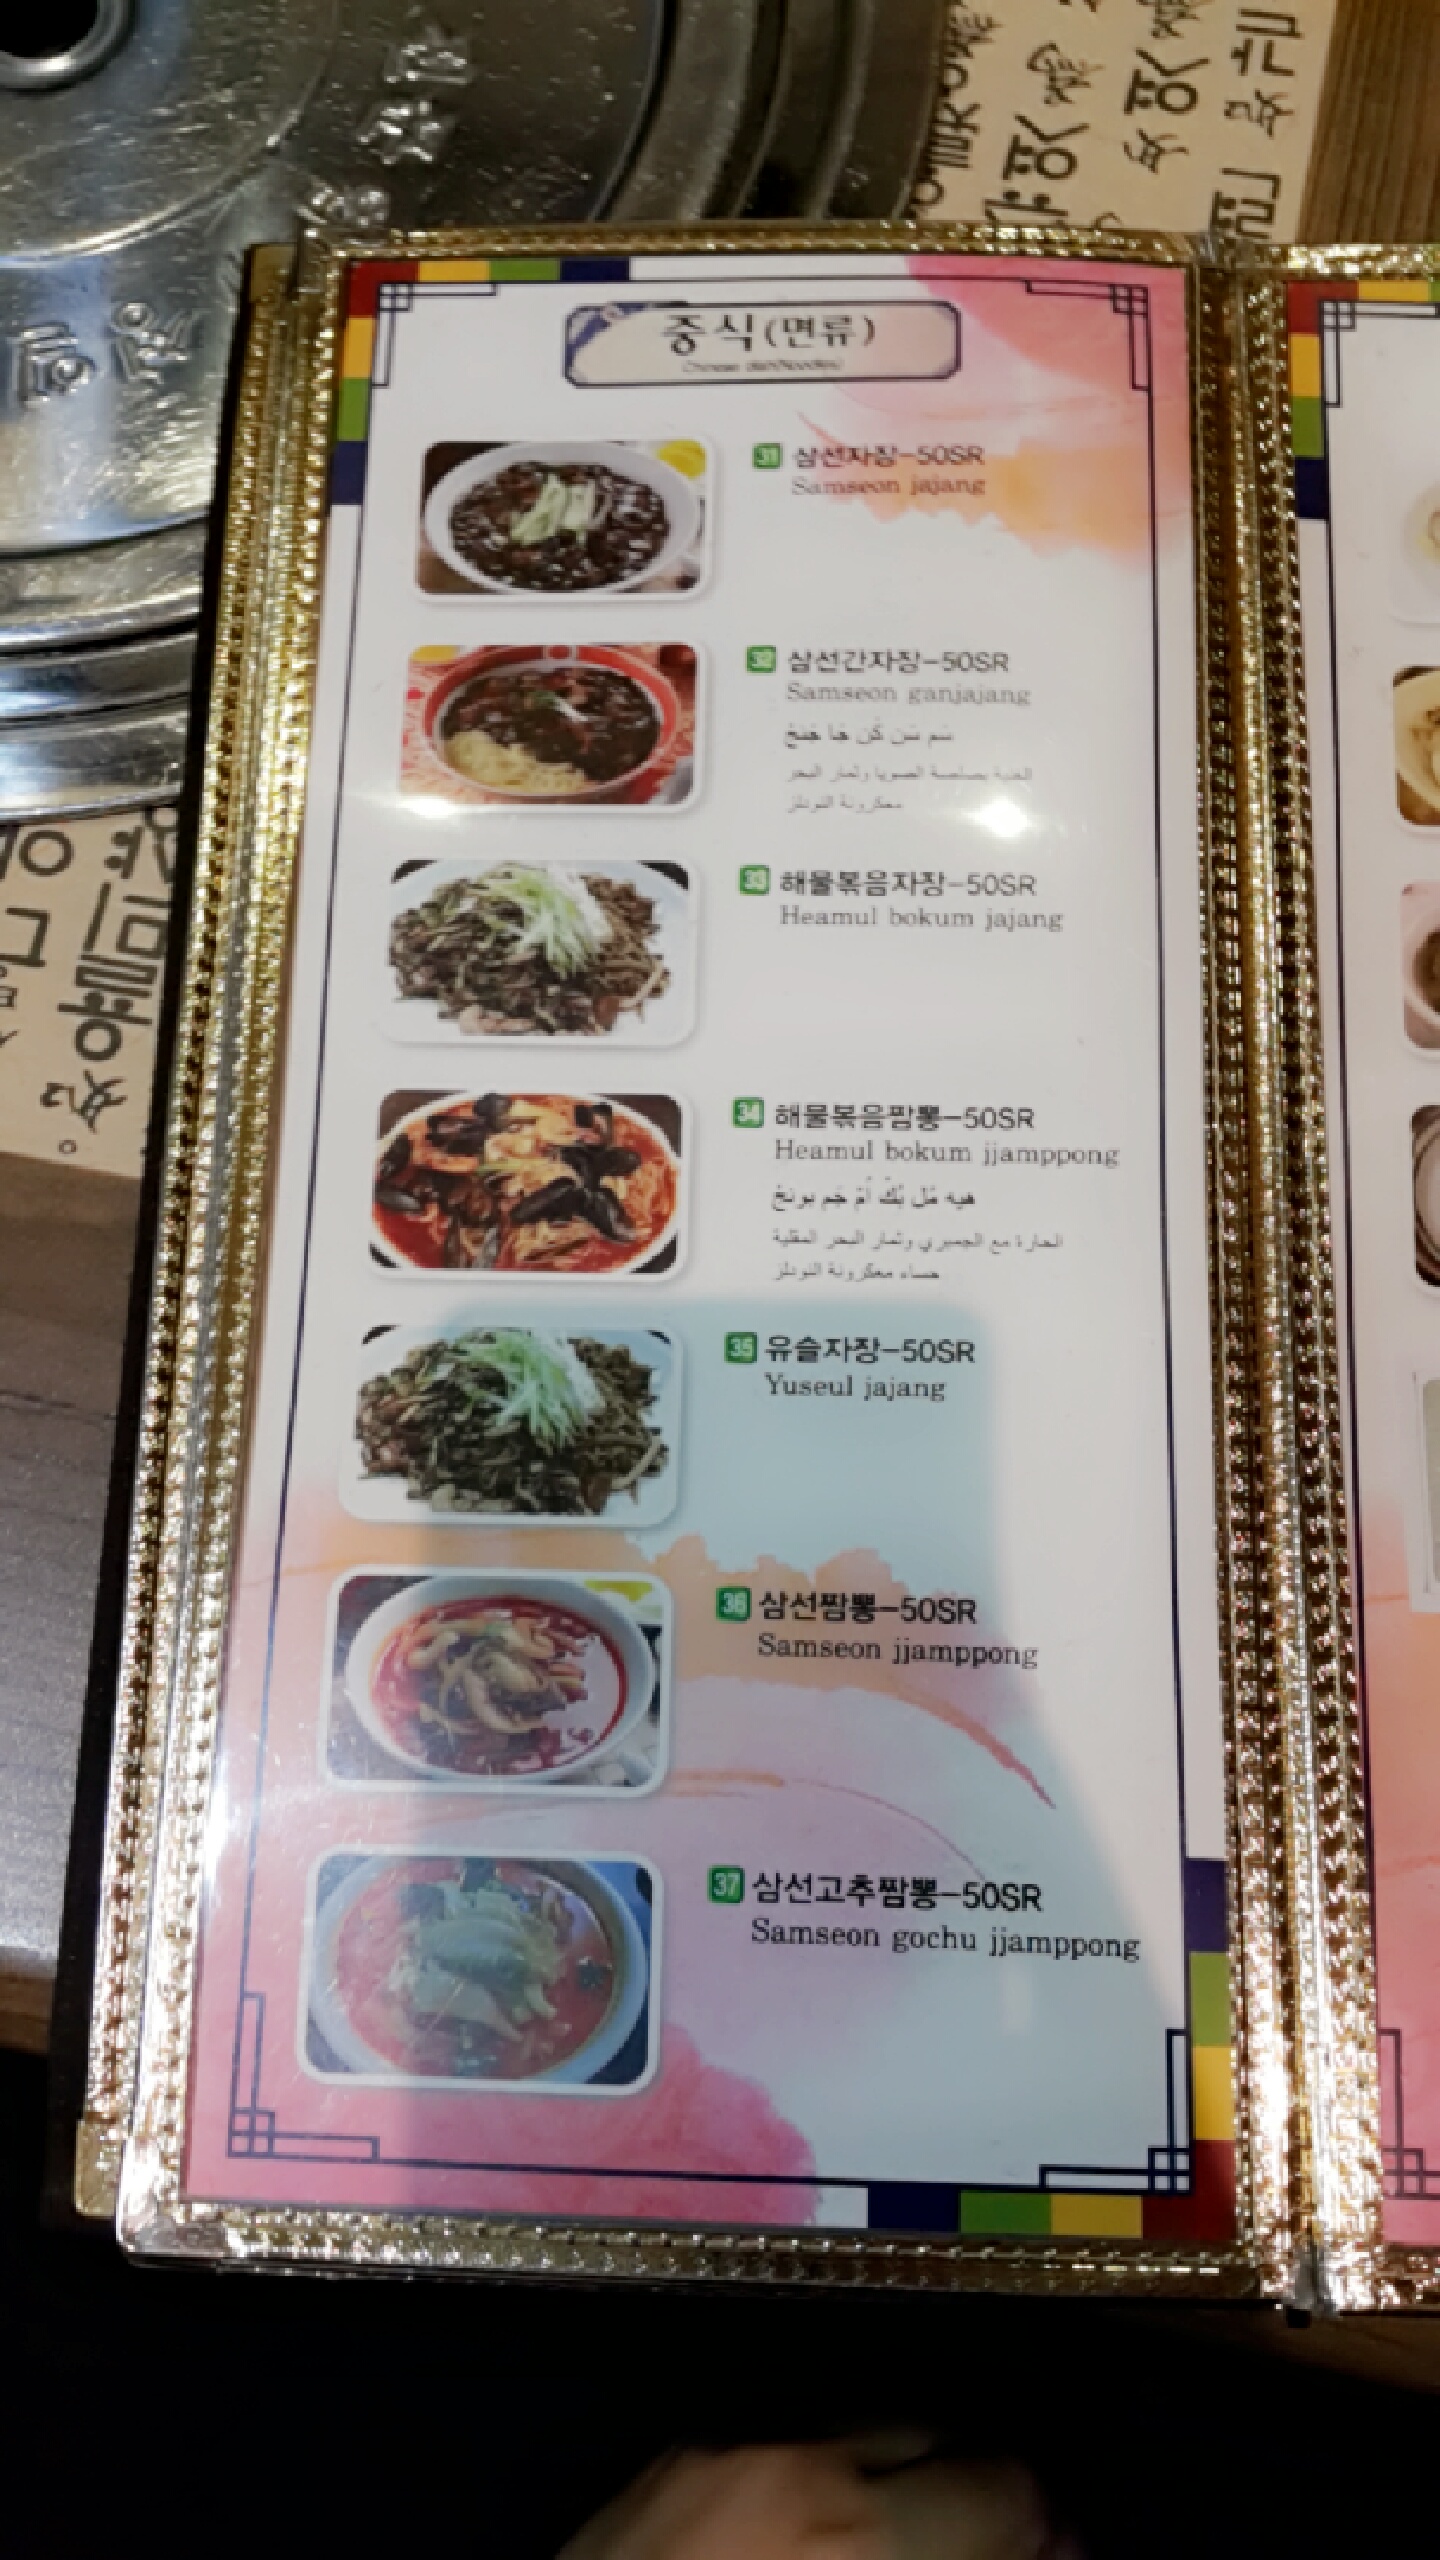 الكوري مطعم القصر أفضل المطاعم